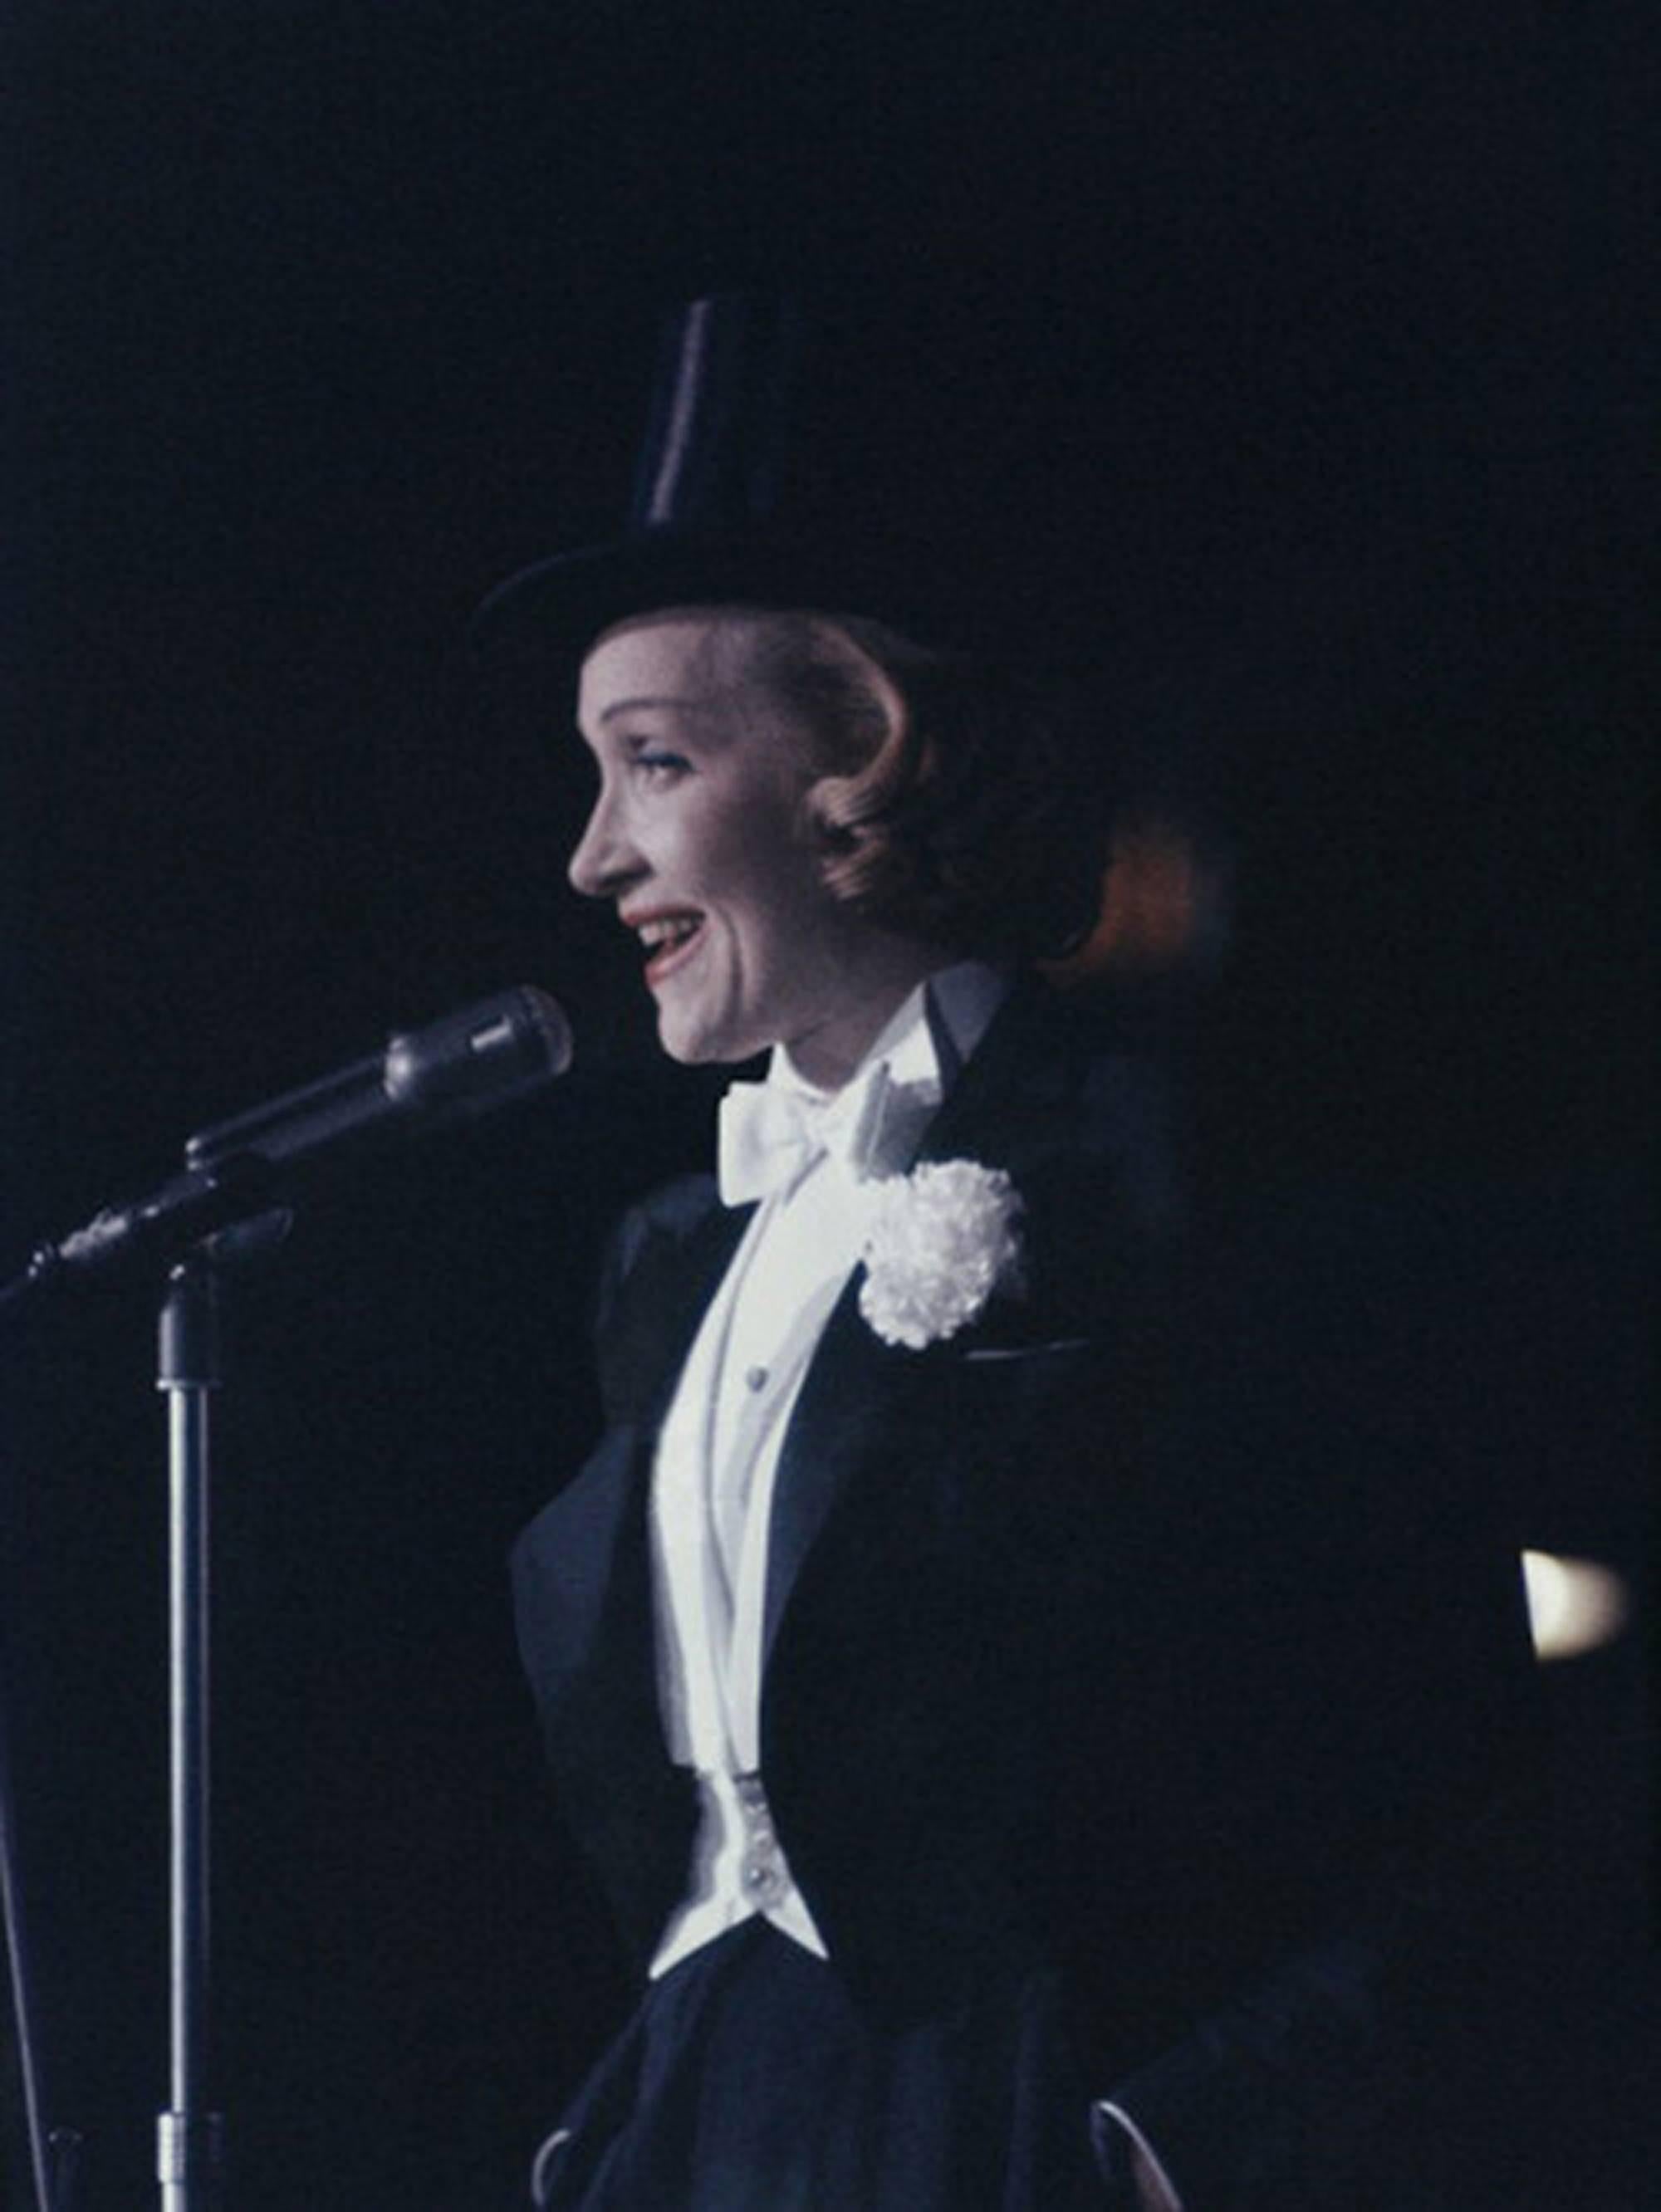 En chapeau haut de forme et queue de pie, Marlene Dietrich (Maria Magdalene von Losch) (1904-1992) se produit lors d'un bal "Avril à Paris" à New York.

60 x 40 pouces
$3950

30 x 30 pouces
$3350

30 x 20 pouces
$3000

Expédition gratuite du